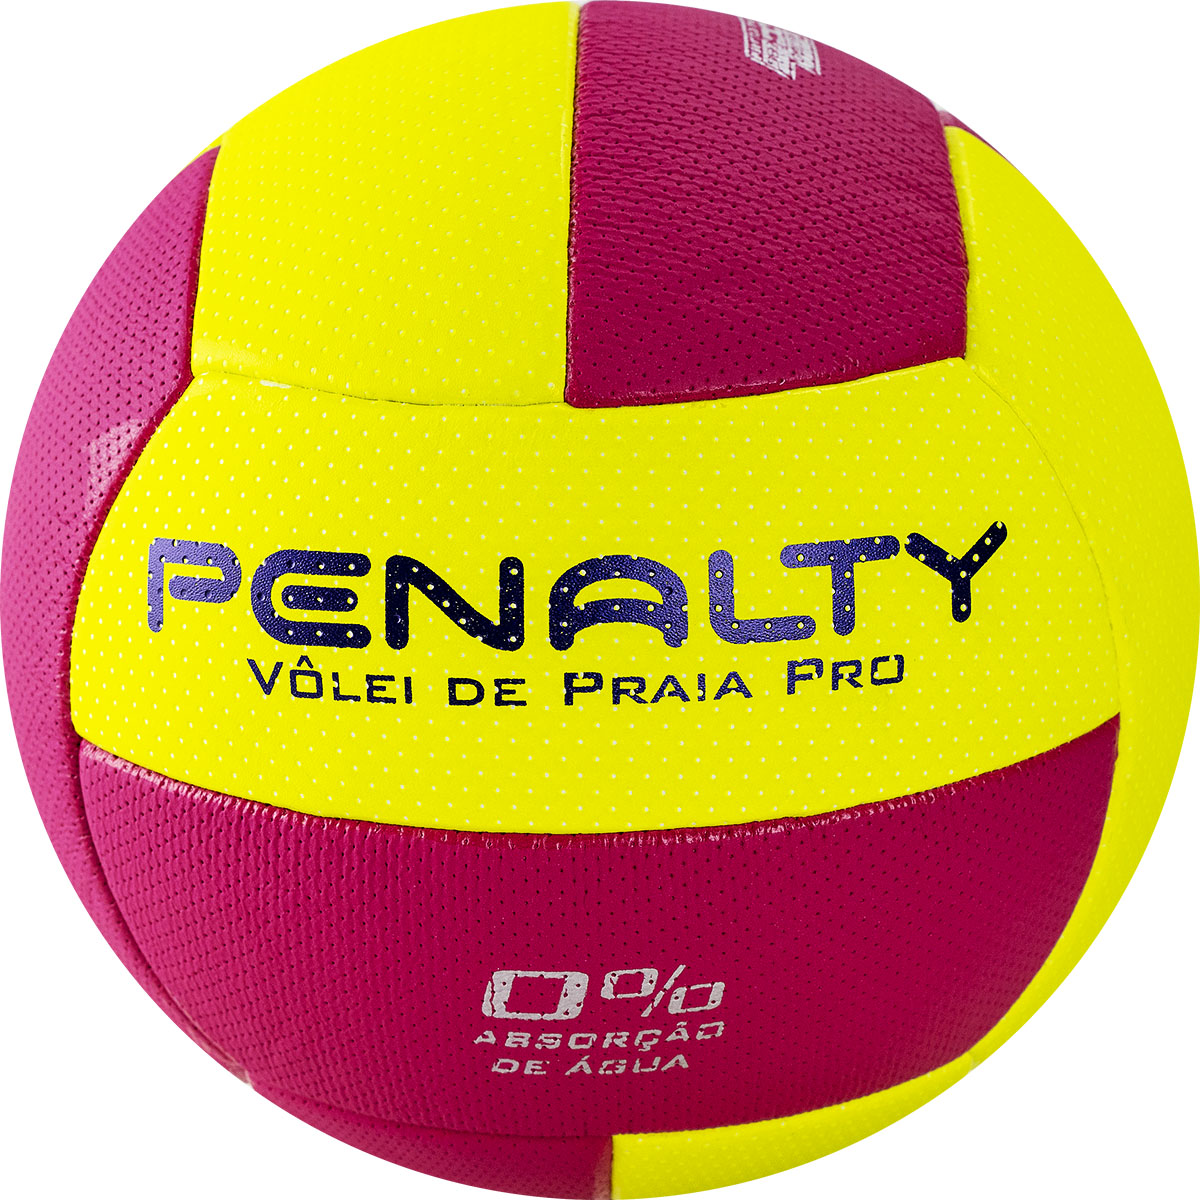 Мяч для пляжного волейбола PENALTY BOLA VOLEI DE PRAIA PRO №5 желтый/розовый